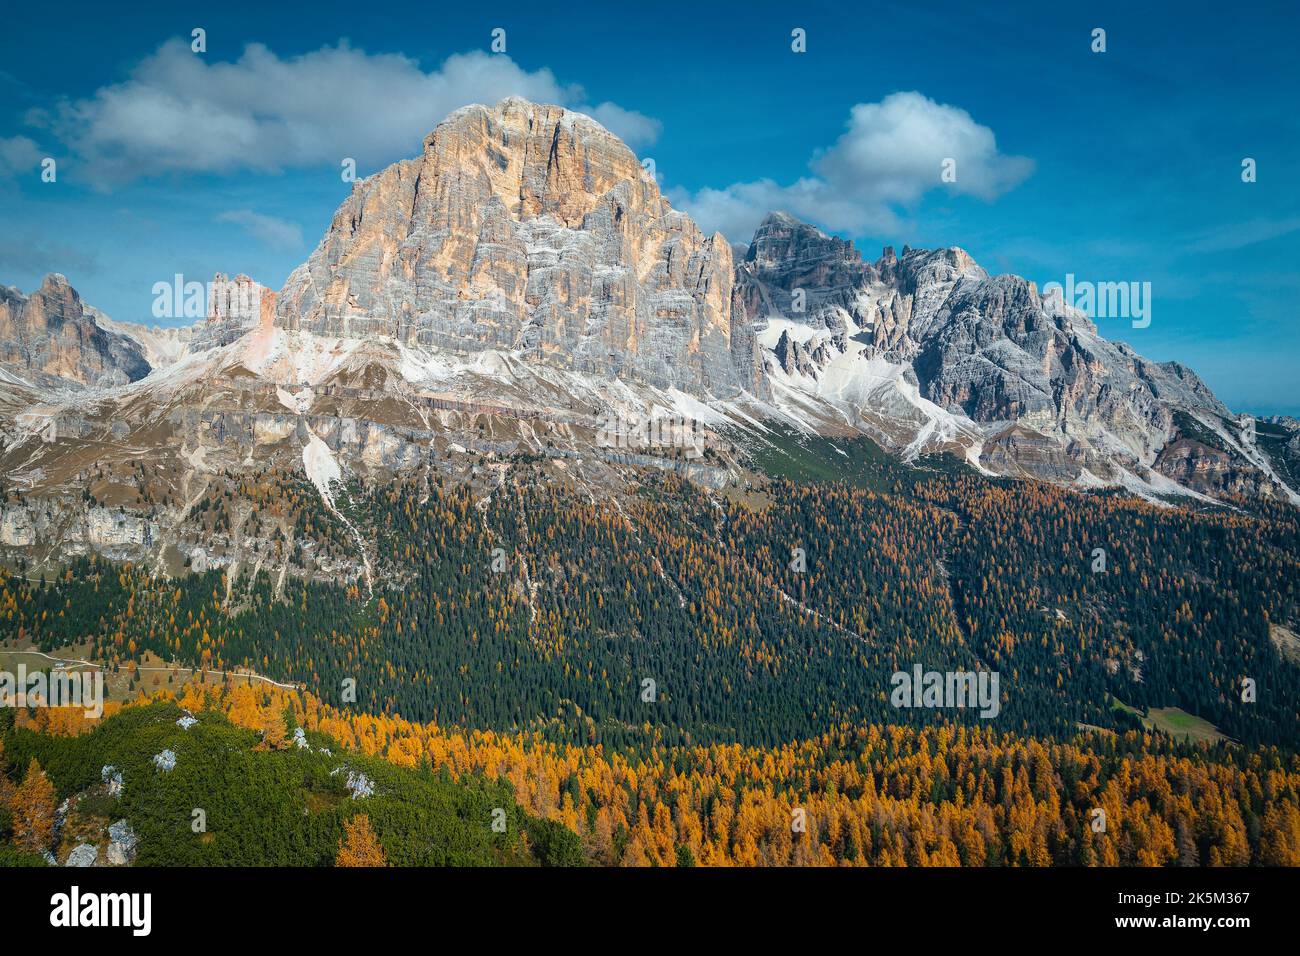 Malerische Herbst-Alpenszenerie mit buntem Lärchenwald an den Hängen und hohen Bergen im Hintergrund, Dolomiten, Italien, Europa Stockfoto